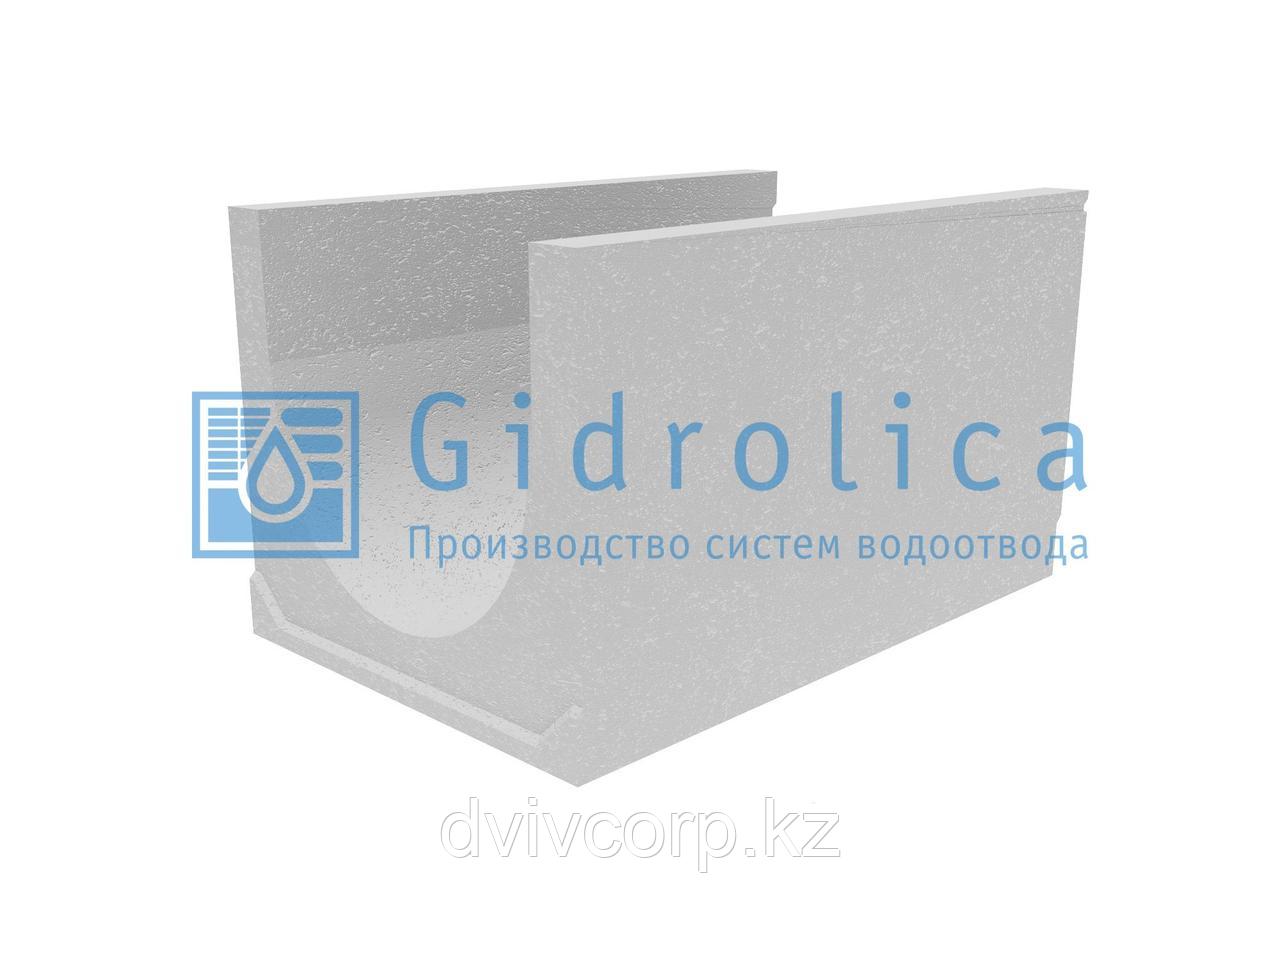 Лоток водоотводный бетонный коробчатый (СО-500мм), с уклоном 0,5%  КUу 100.65(50).58(49) - BGU-XL, № 26